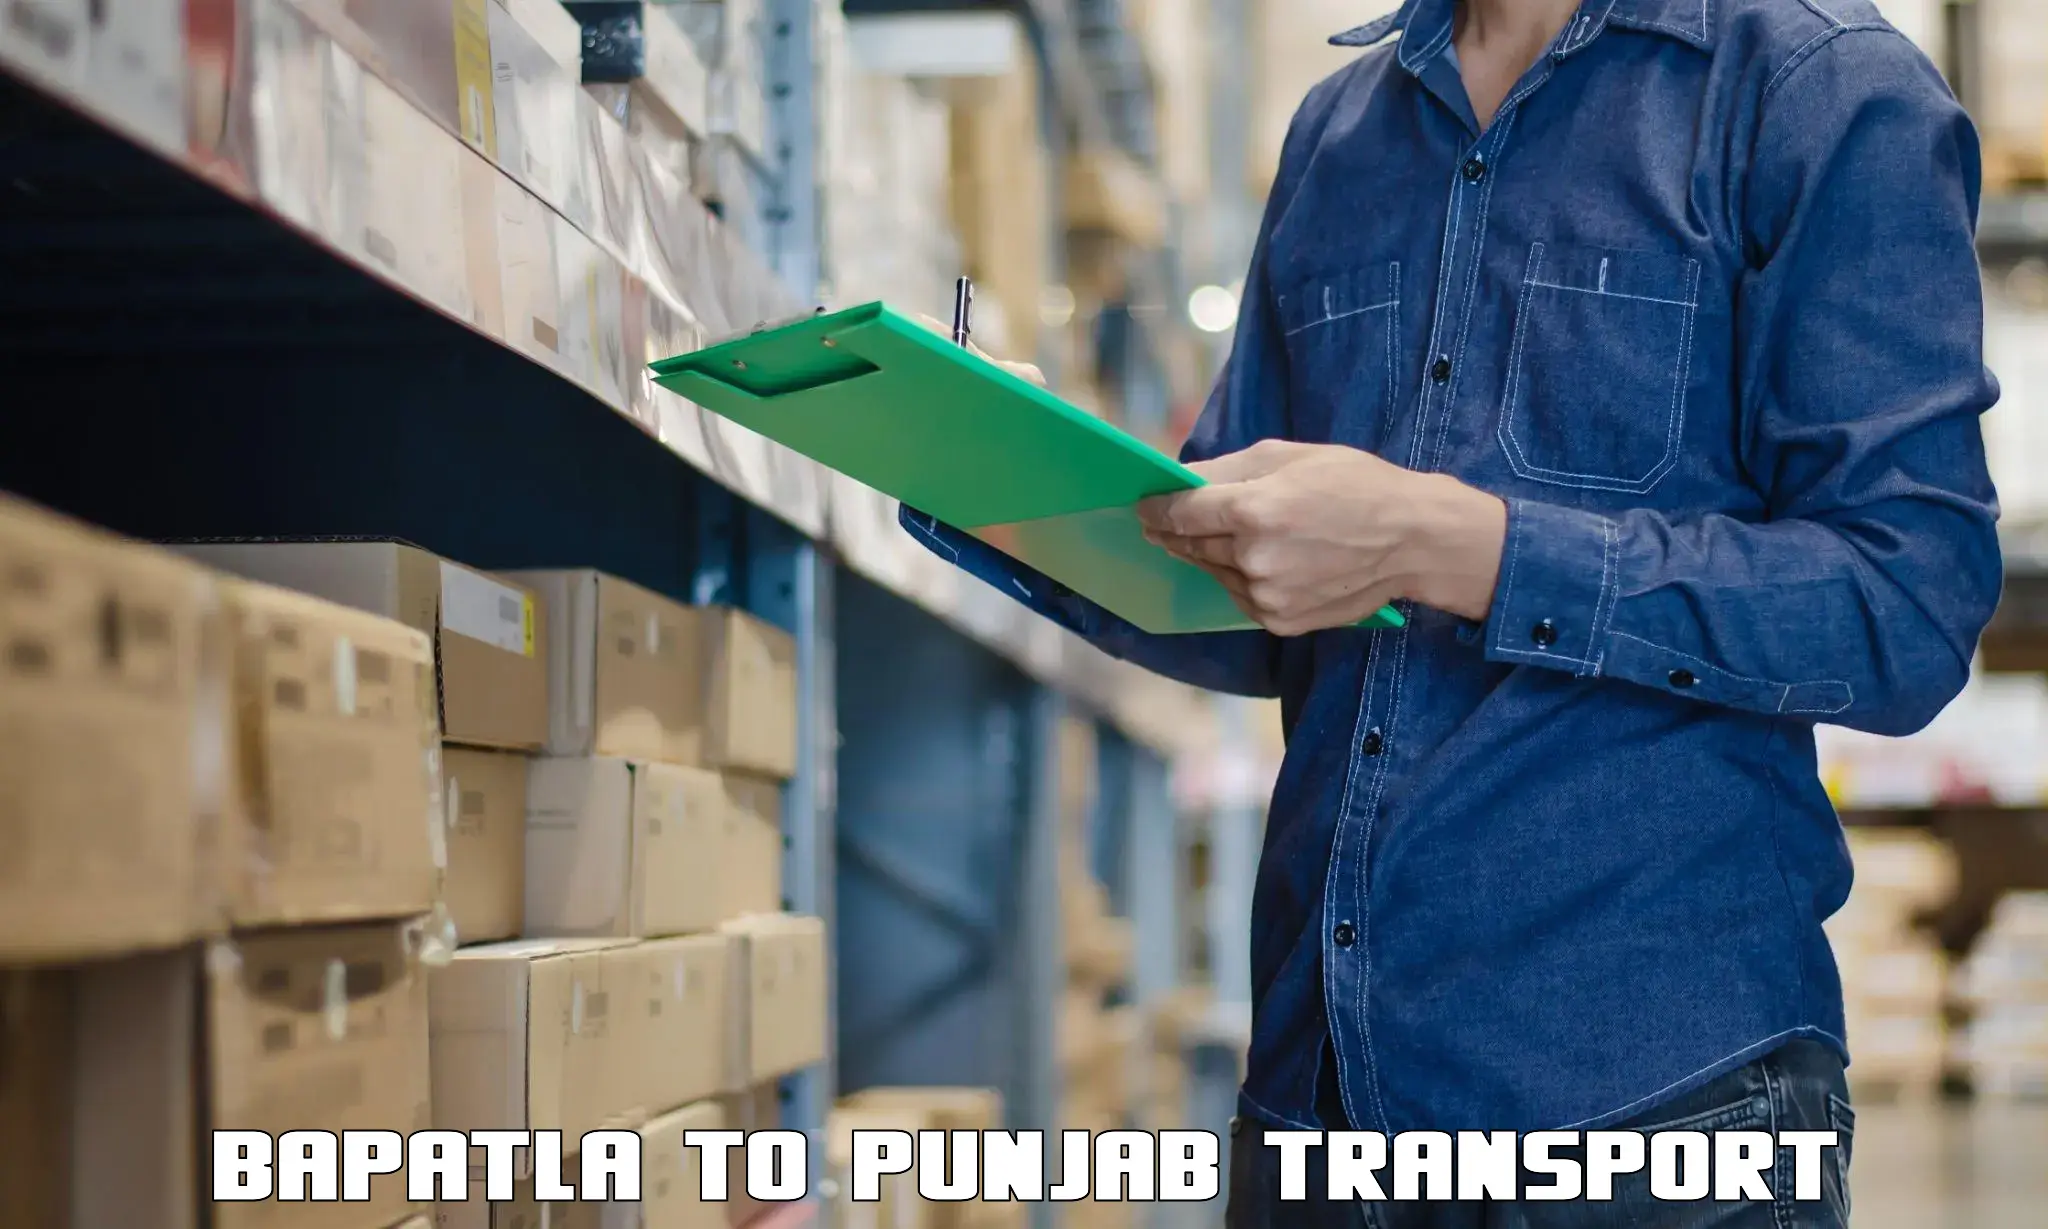 Truck transport companies in India Bapatla to Dinanagar